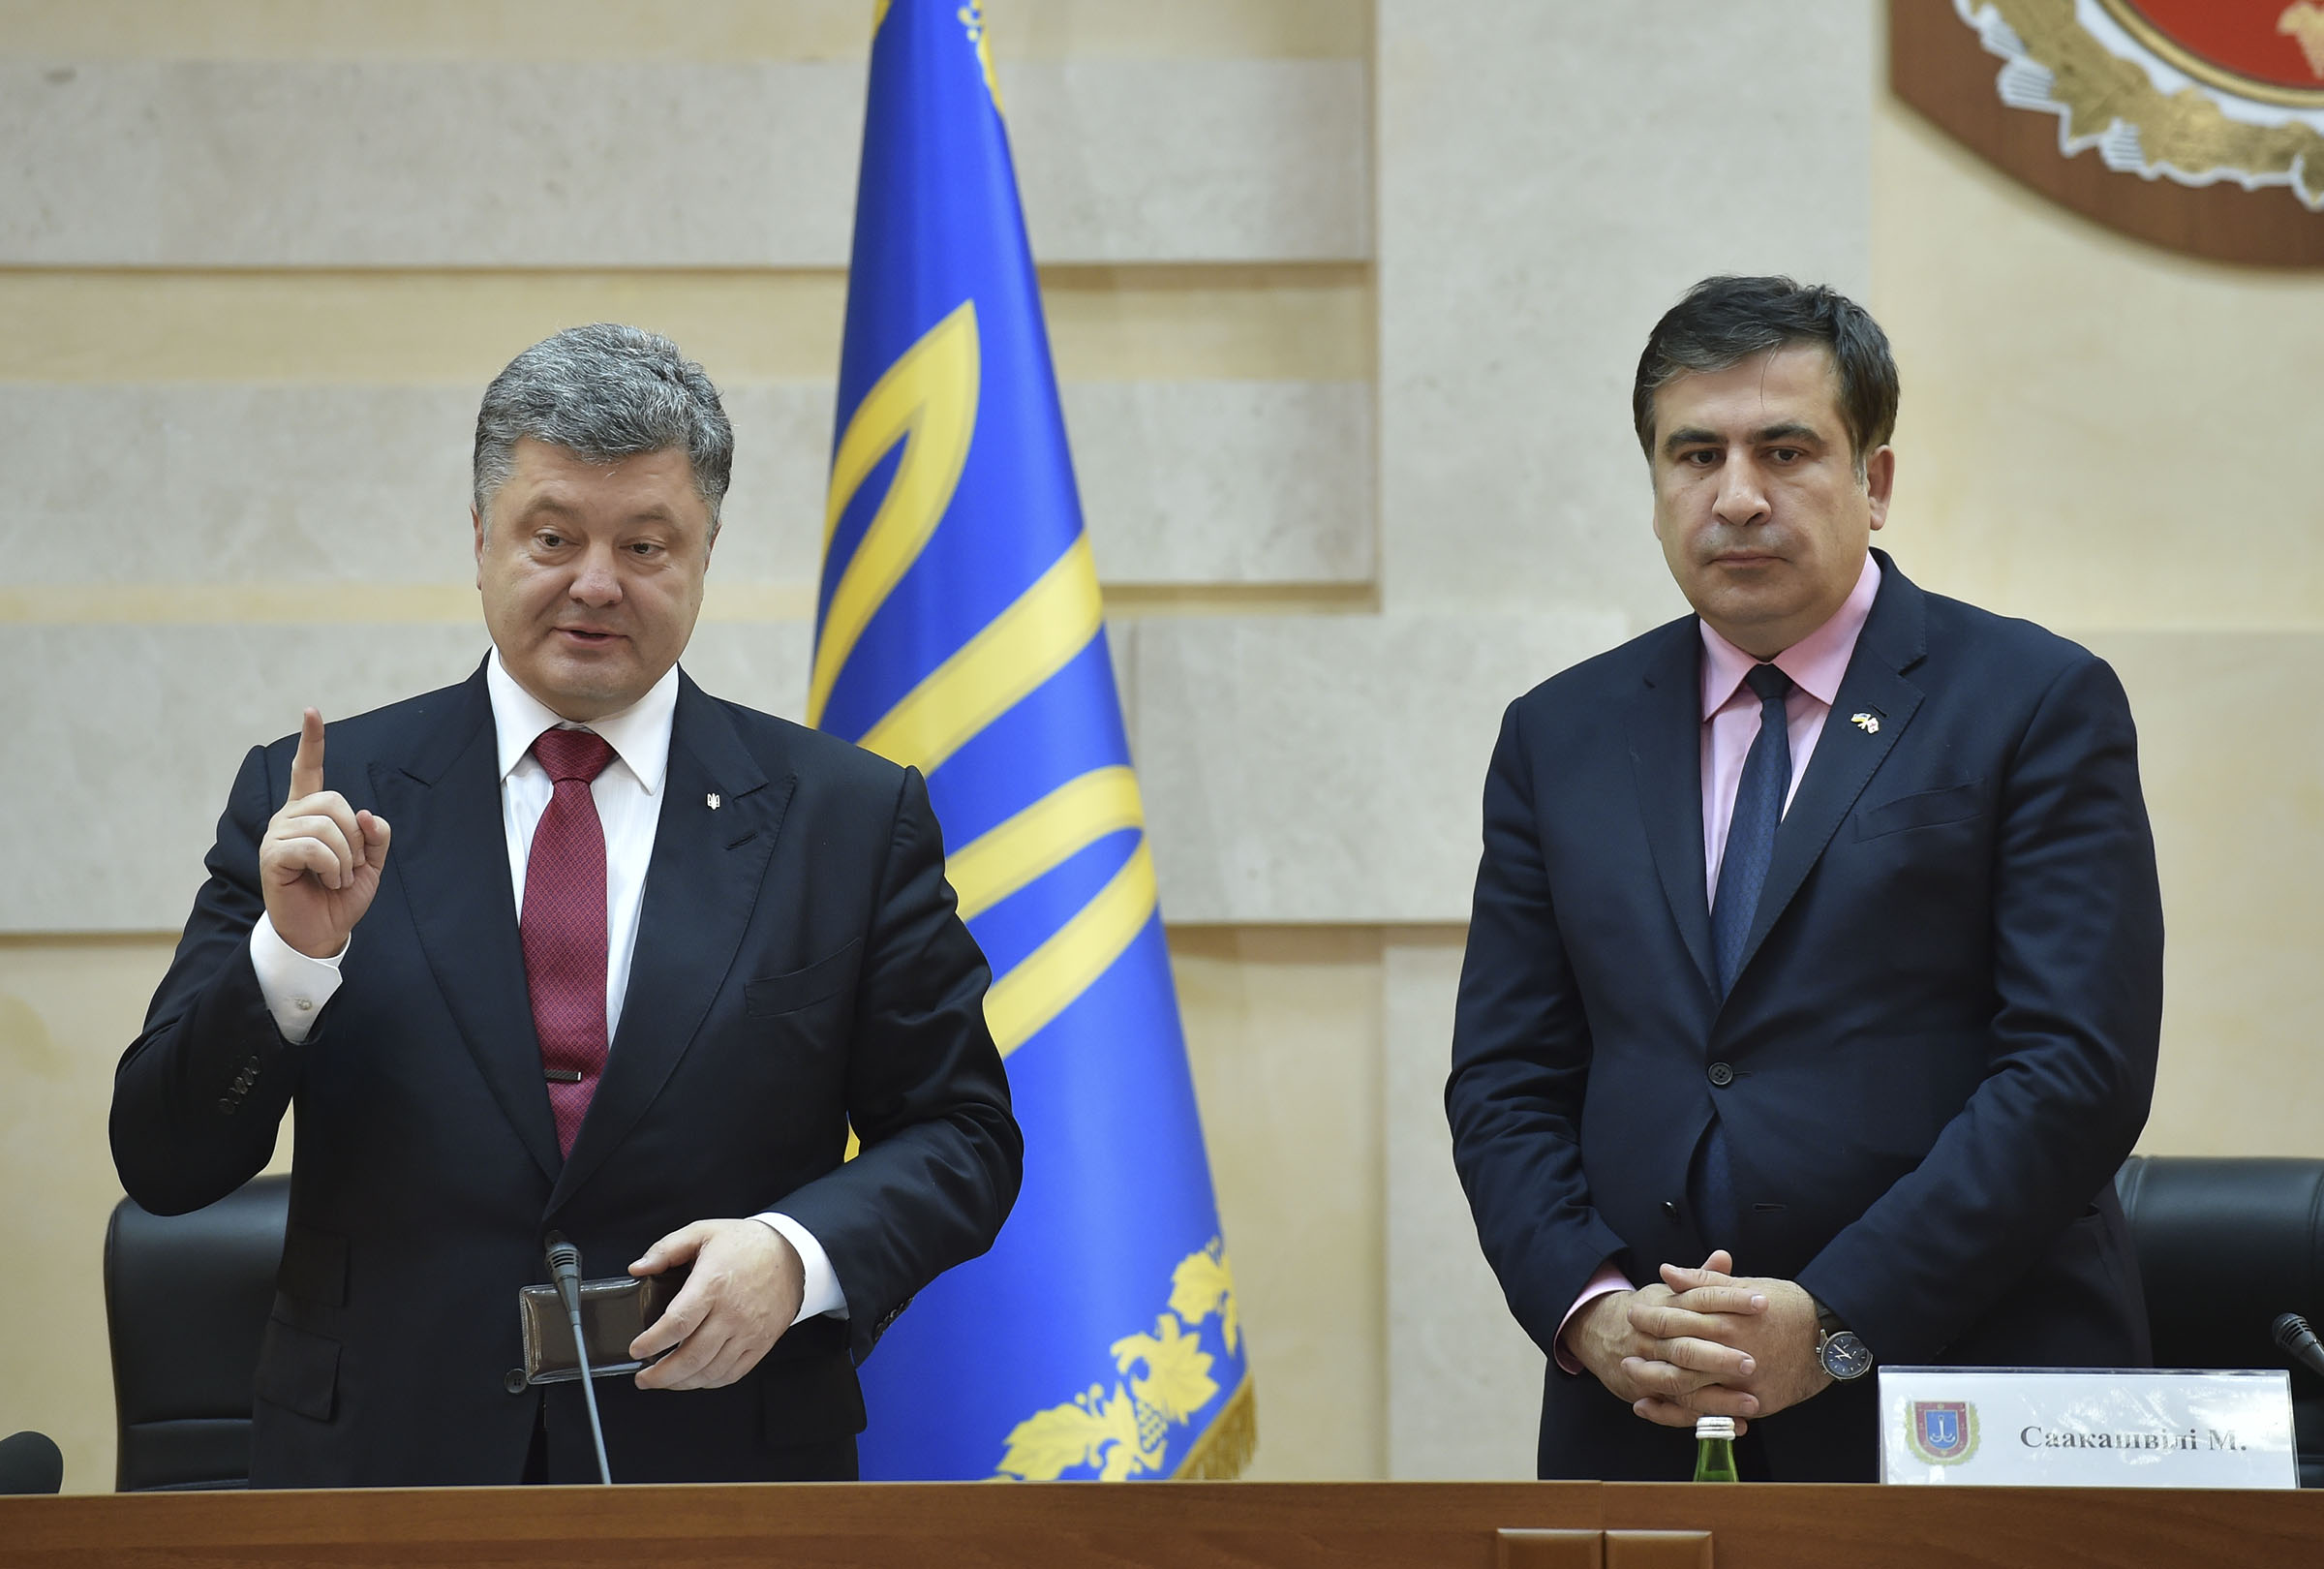 Возможное лишение гражданства Саакашвили: блогер раскрыл интересные детали сегодняшнего скандала